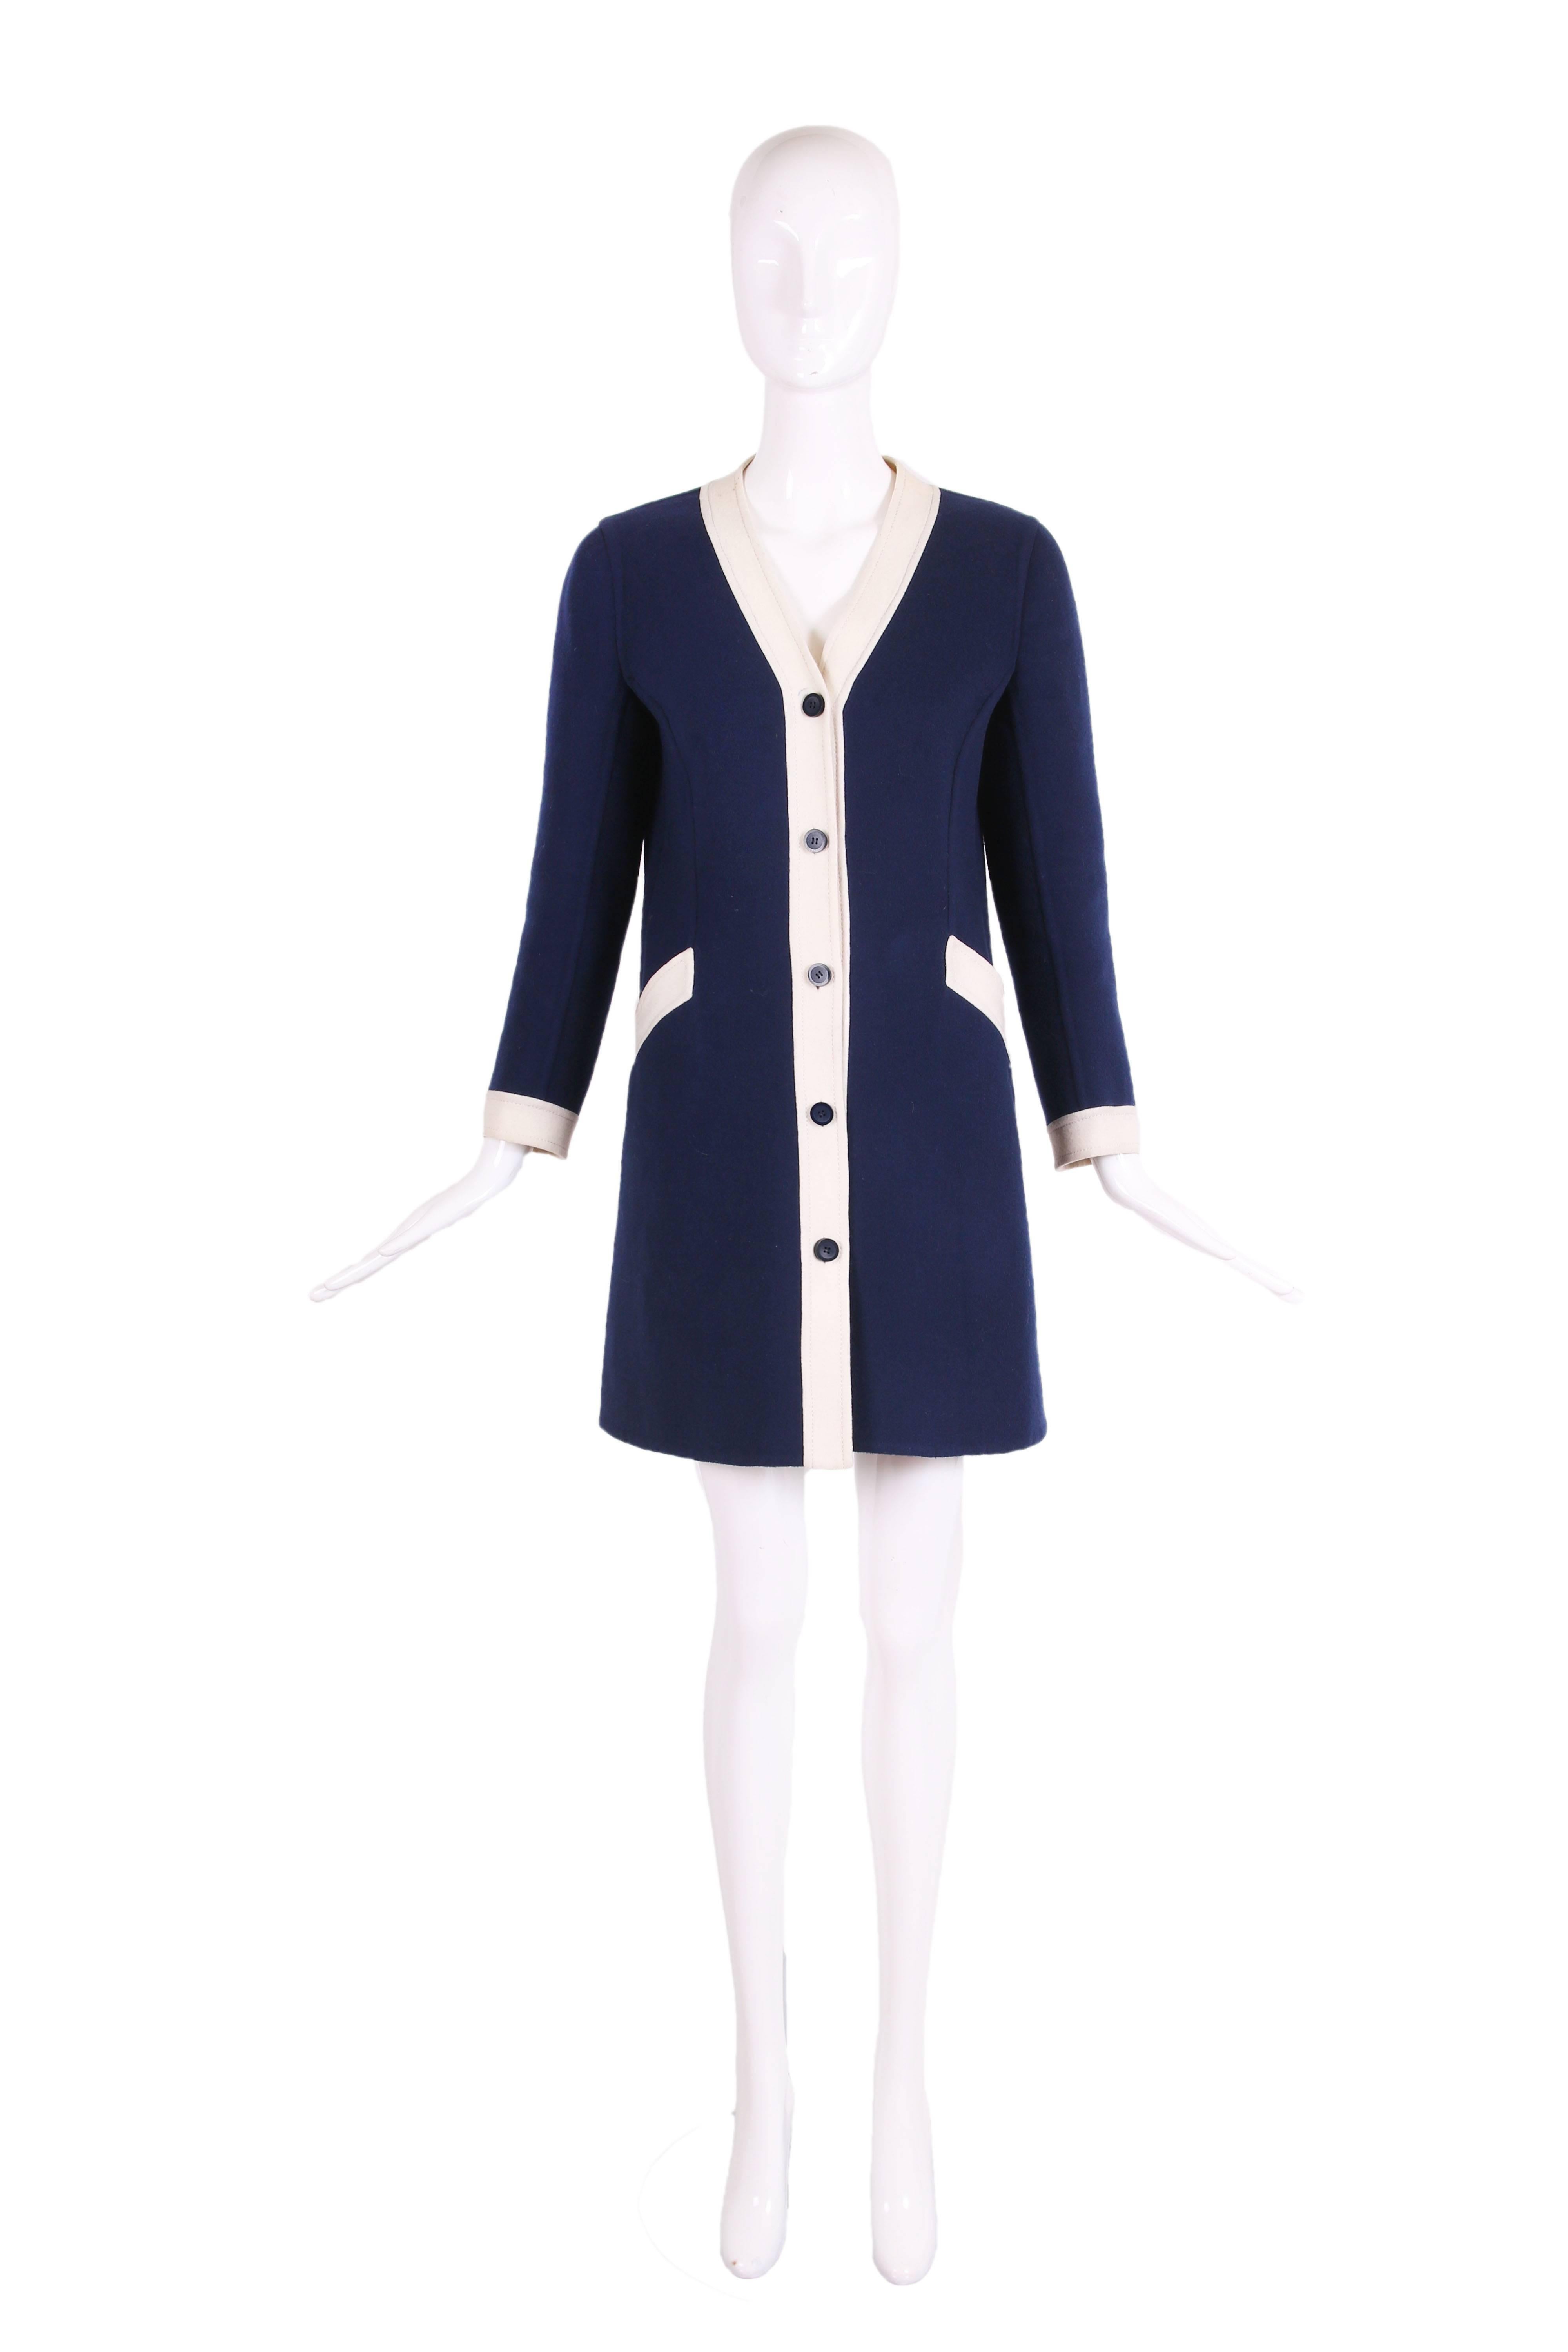 robe manteau en laine melton marine Valentino des années 1970, avec une bordure blanche, des boutons marine au centre du devant, et deux poches frontales. En excellent état avec quelques marques imperceptibles à l'épaule droite et une légère marque